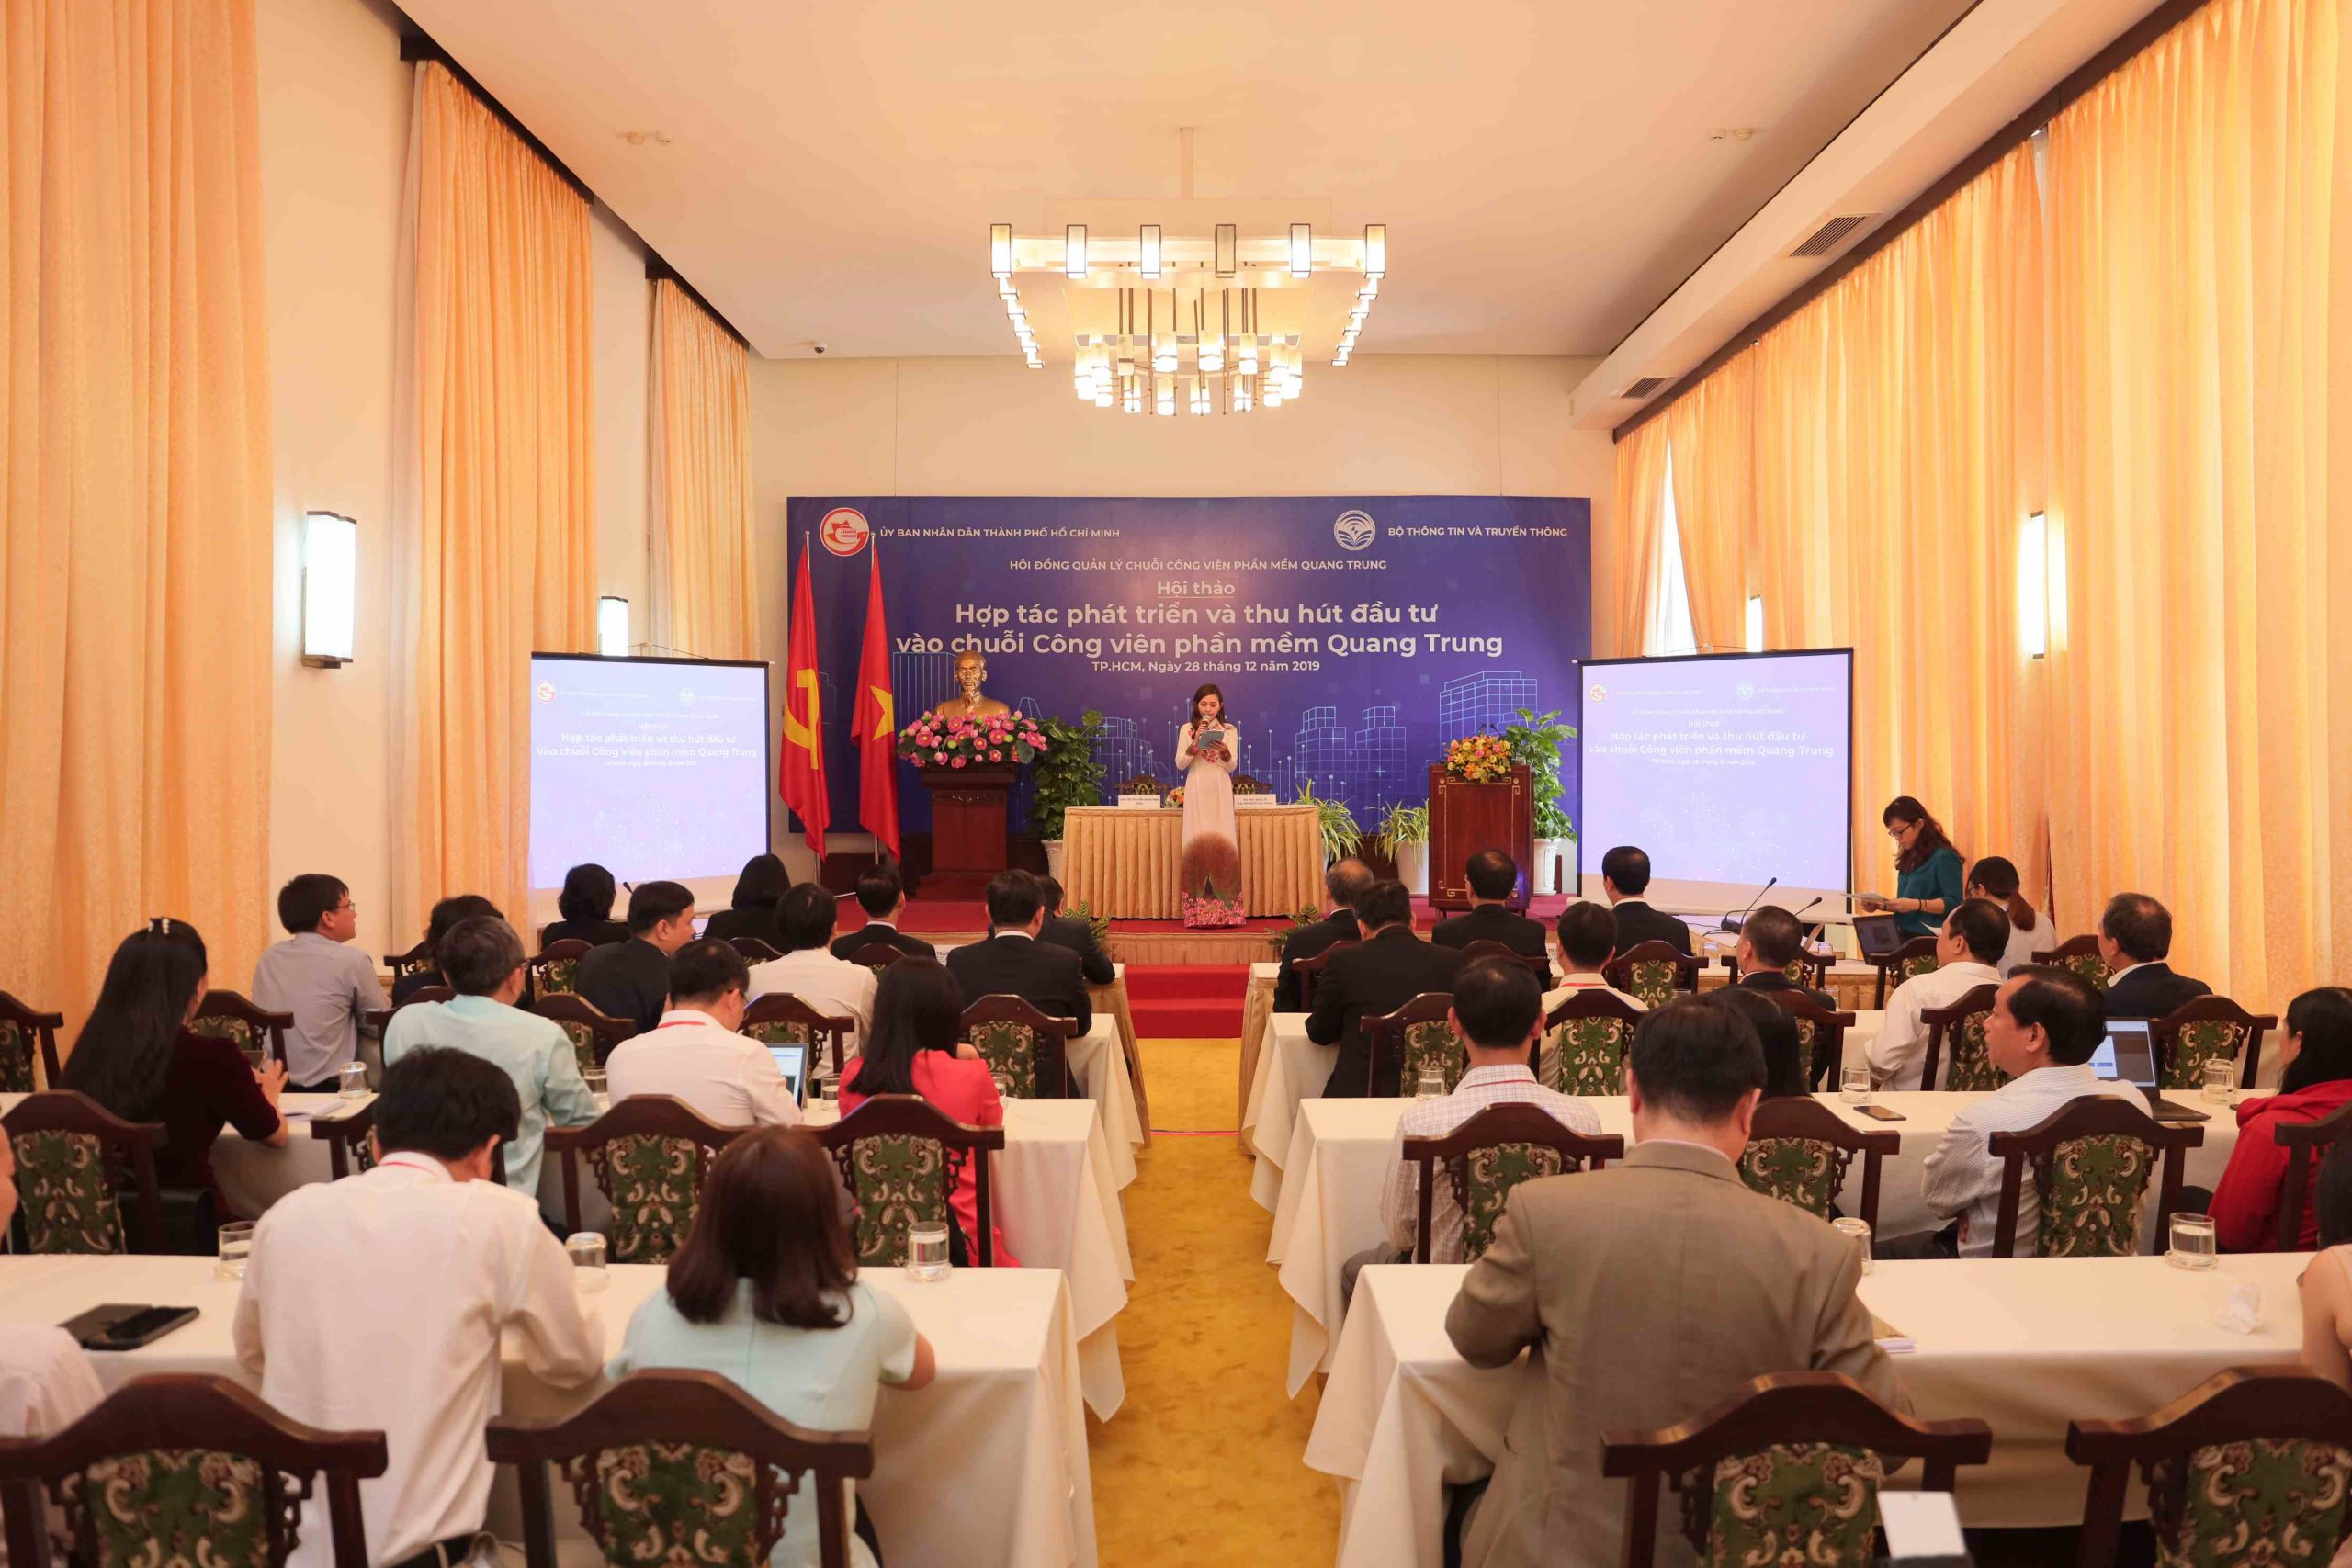 Trường Đại học Quốc tế kí kết hợp tác cùng công viên phần mềm Quang Trung